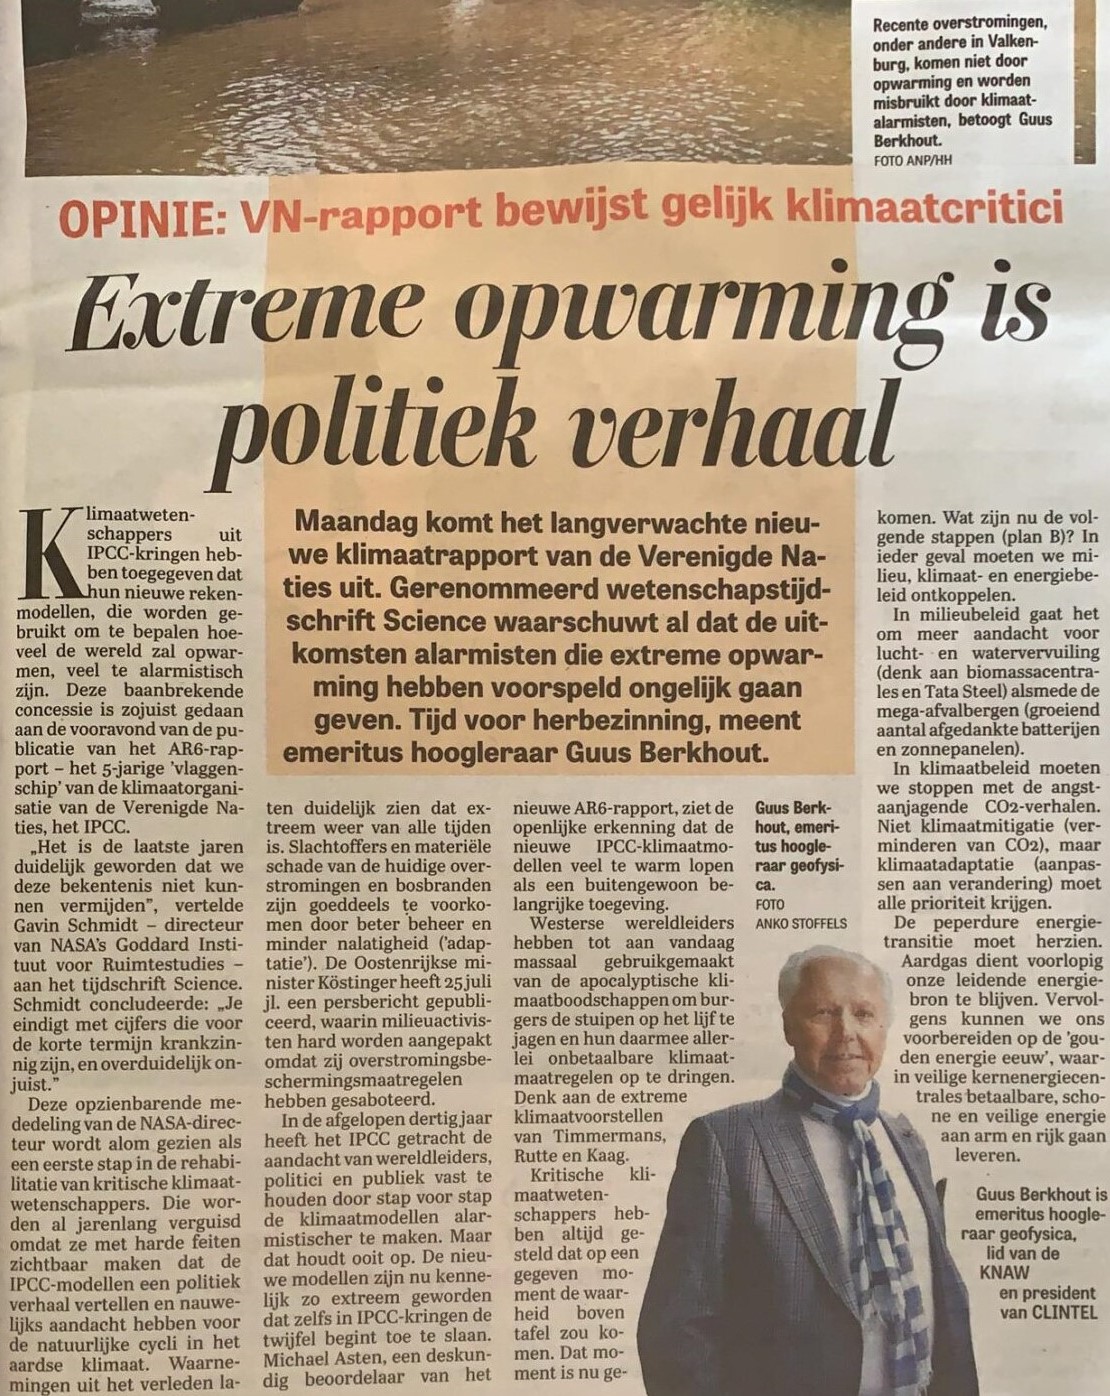 Guus_Berkhout-Extreme_opwarming_is_politiek_verhaal